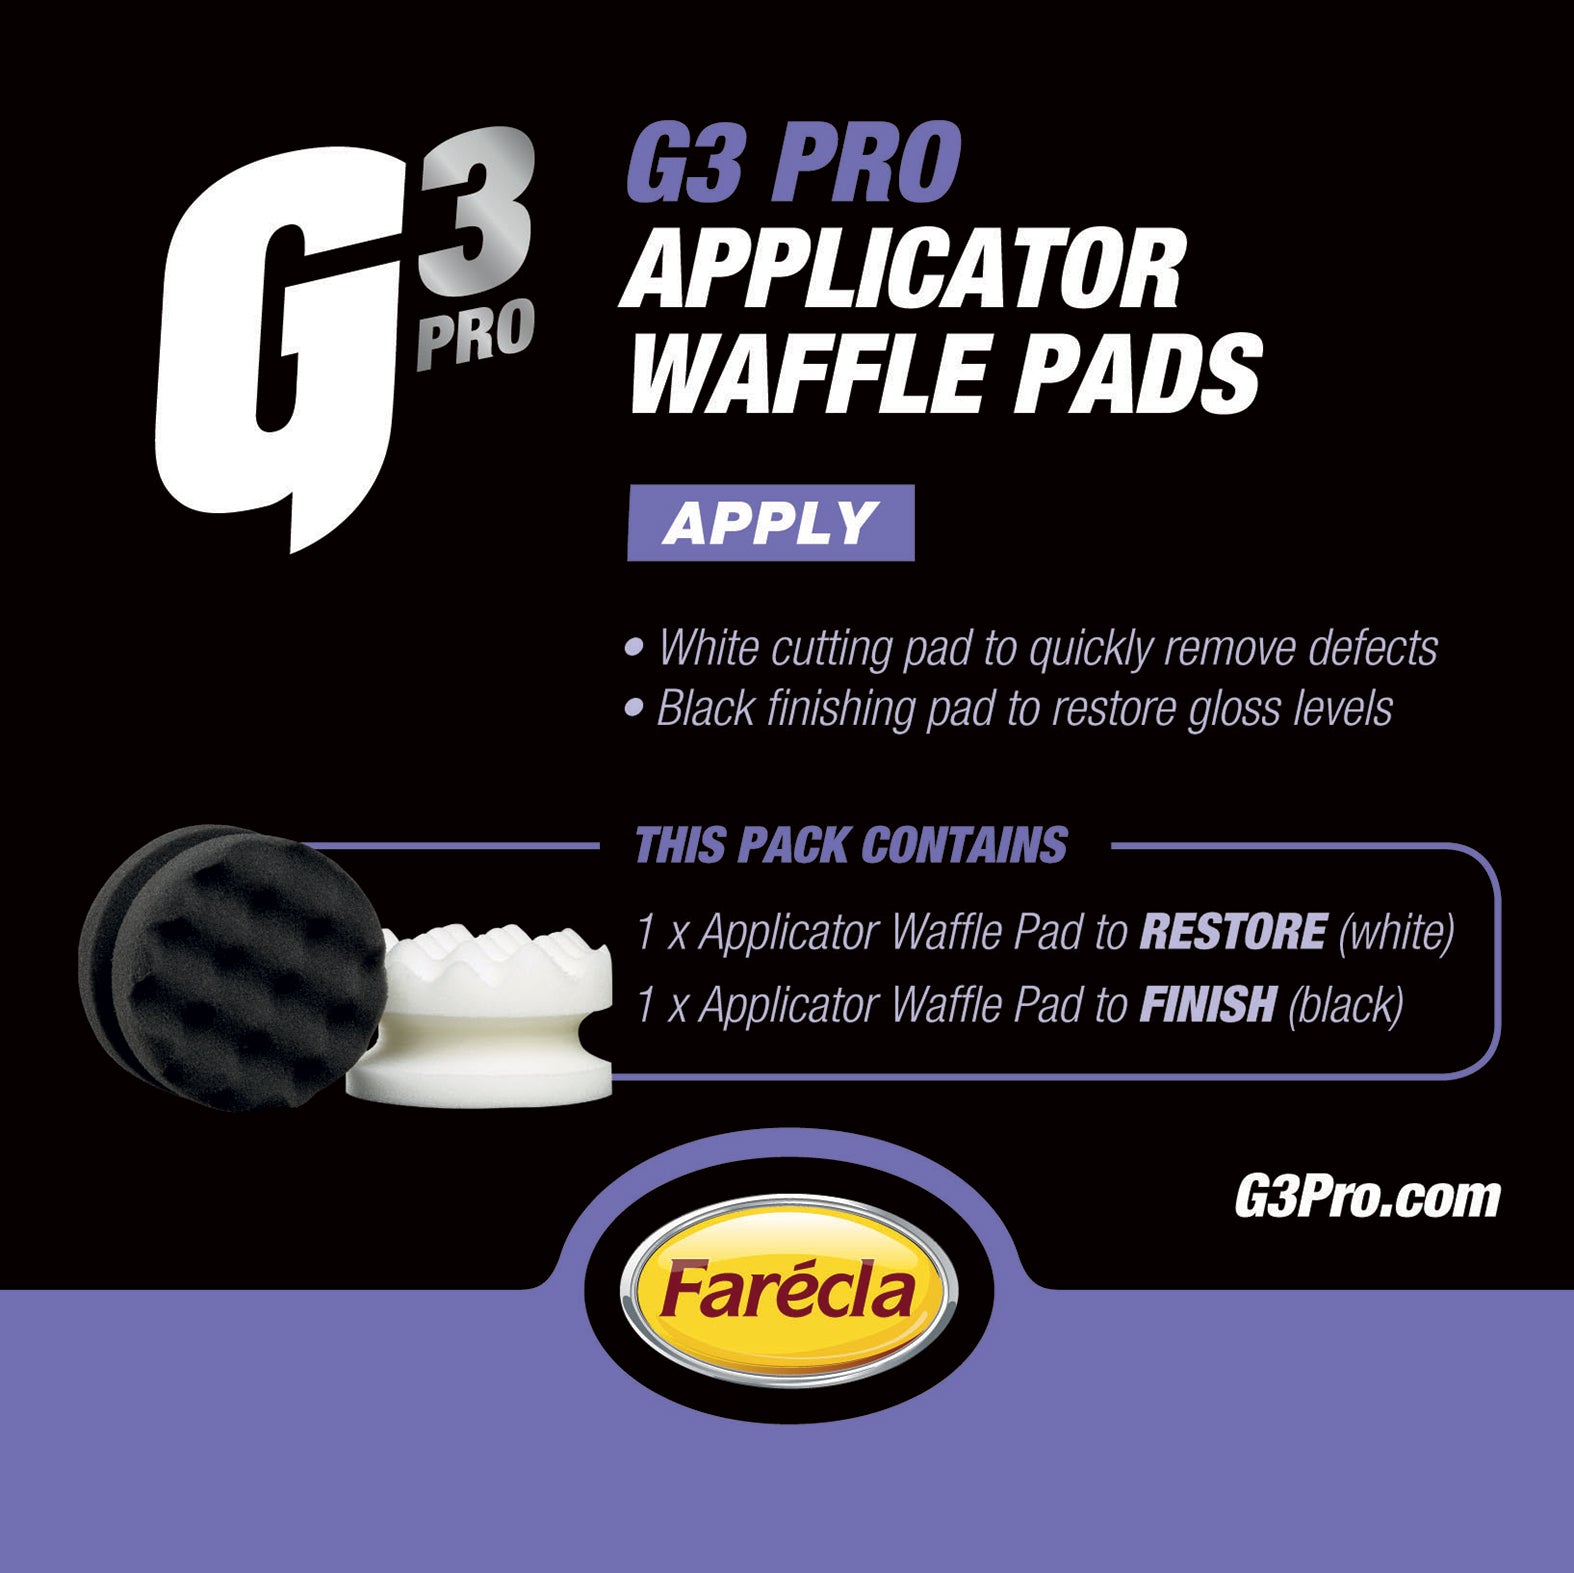 G3 Pro Applicator Waffle Pads